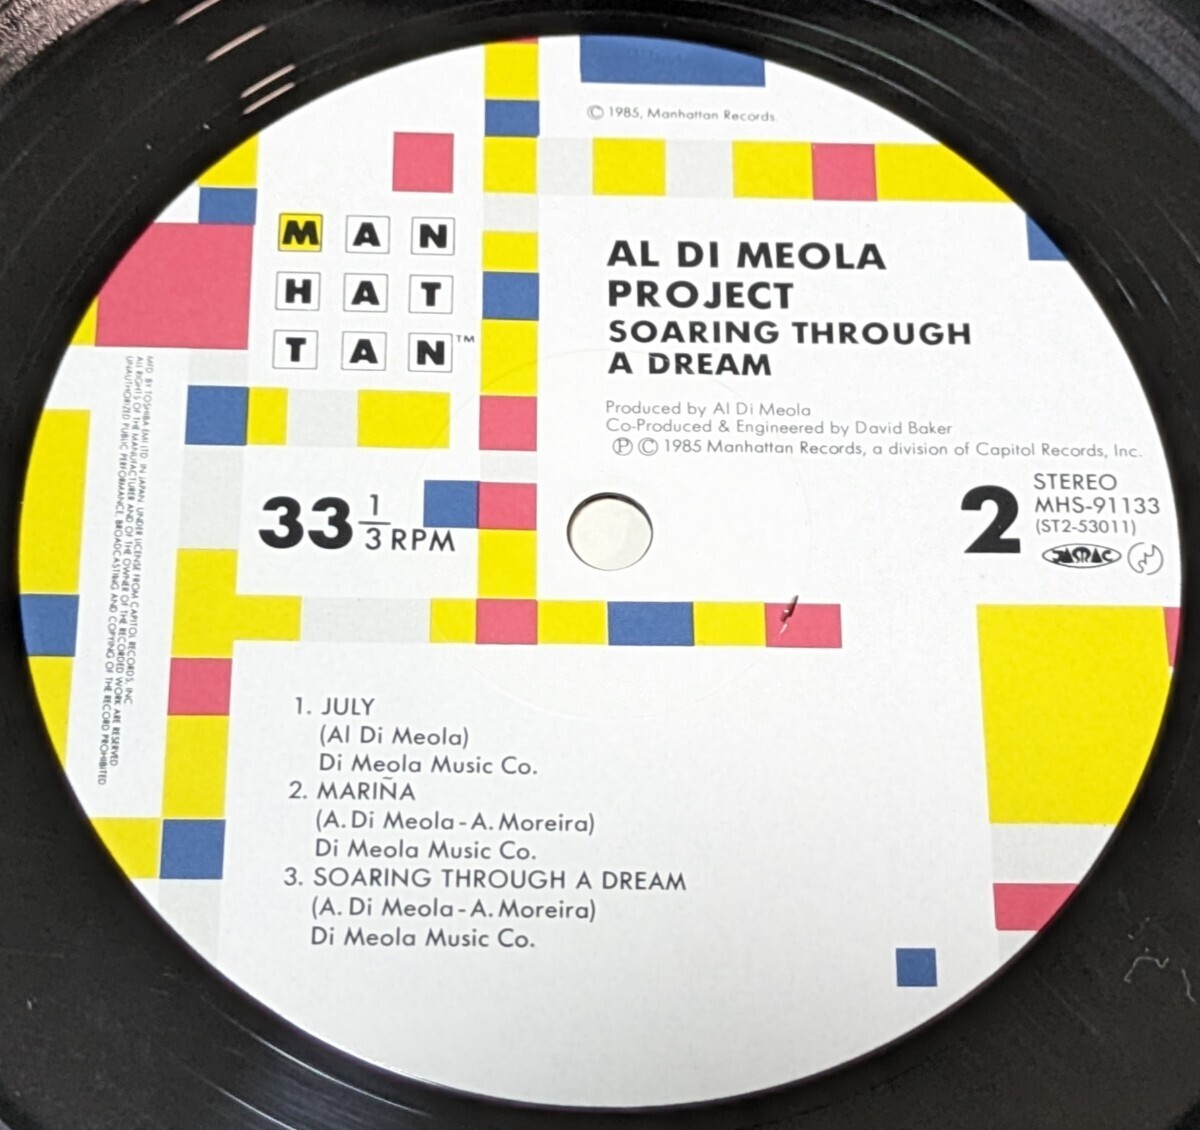 シュリンク付中古LPレコード/AL DI MEOLA Project/アル・ディメオラ/SOARING THROUGH A DREAM/夢幻飛行/MHS-91133/【同梱歓迎】_画像4